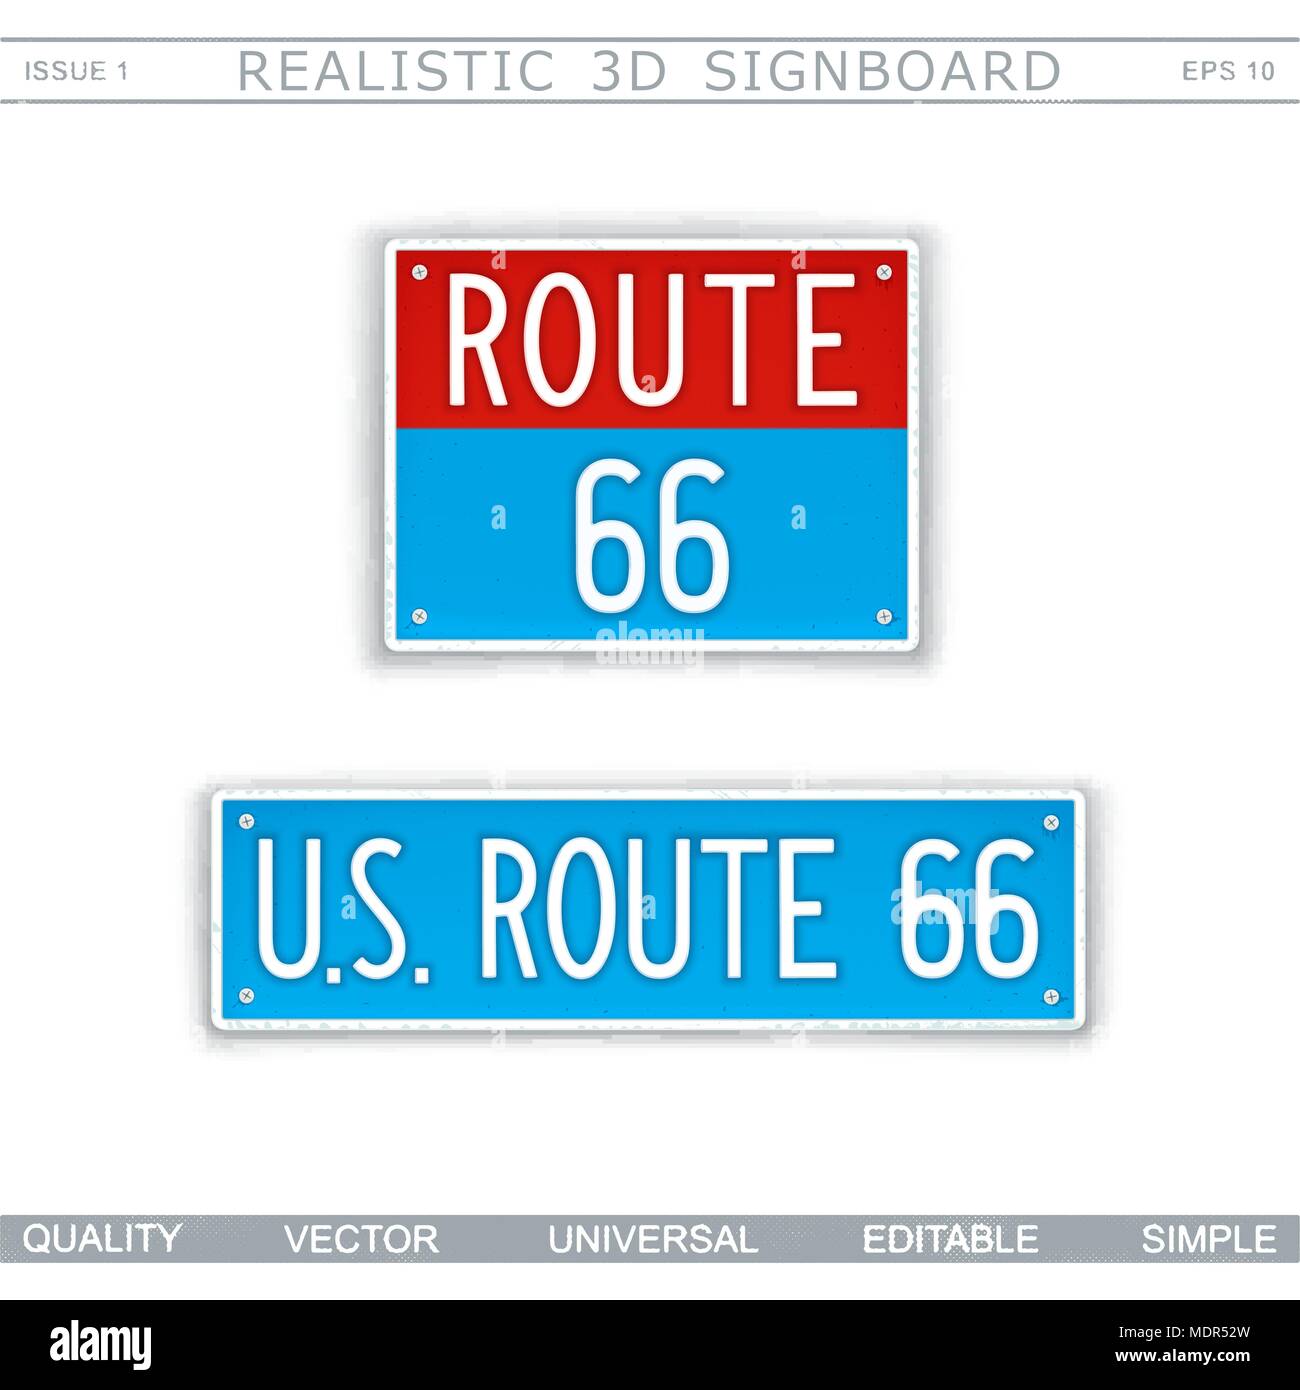 U.S. Route 66. 3D créative pancarte. Vue d'en haut. Éléments de conception vectorielle Illustration de Vecteur